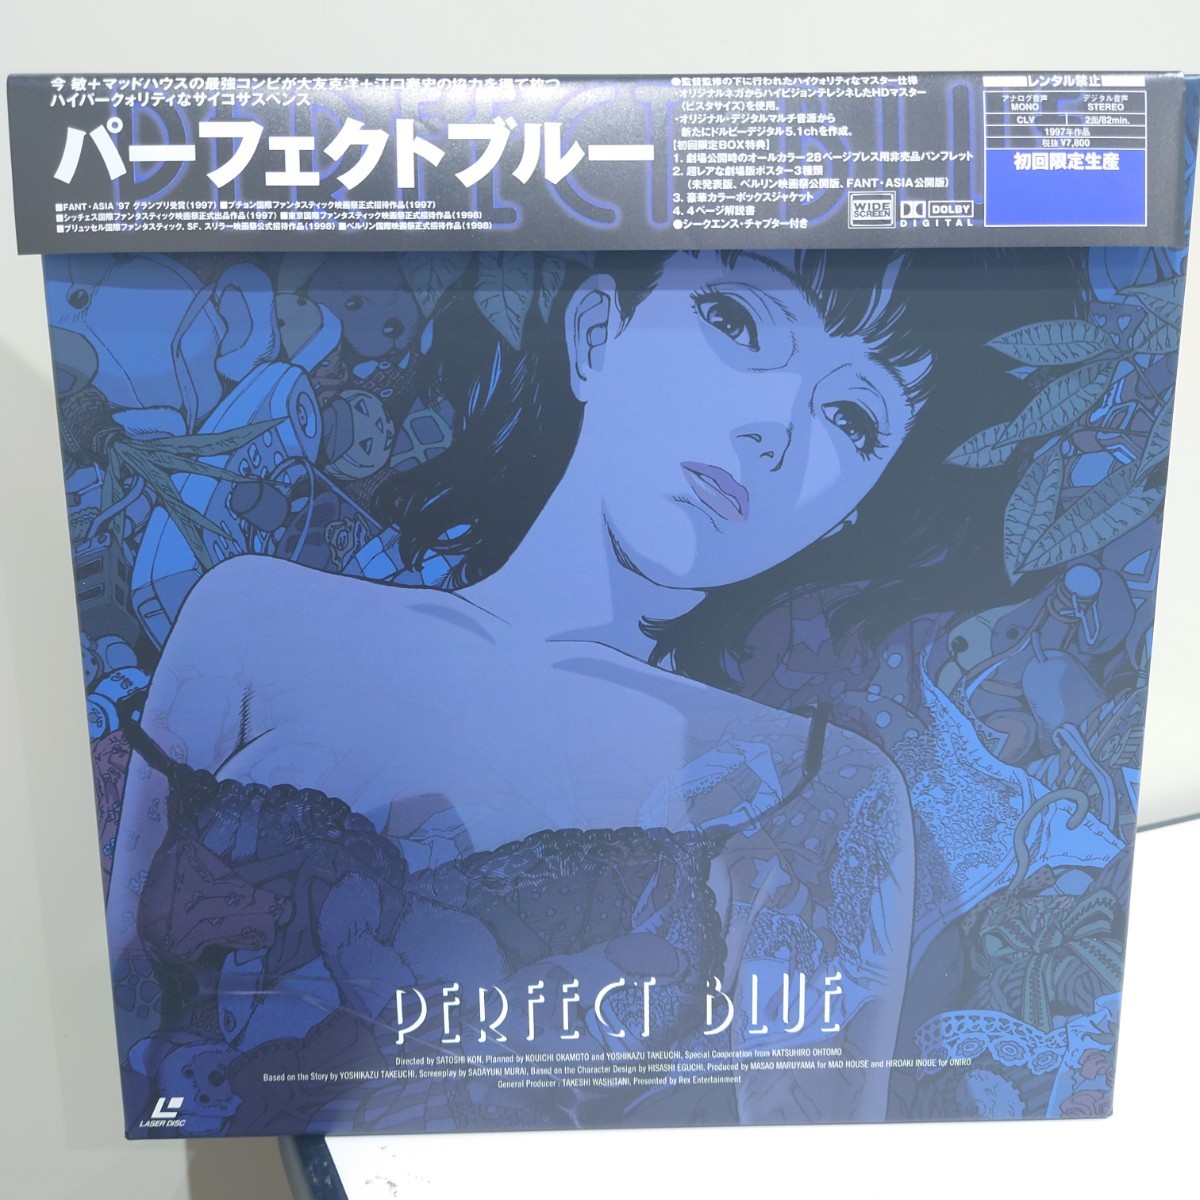 パーフェクトブルー 初回限定生産 LD-BOX仕様 ドルビーデジタル版 レーザーディスク PERFECT BLUE